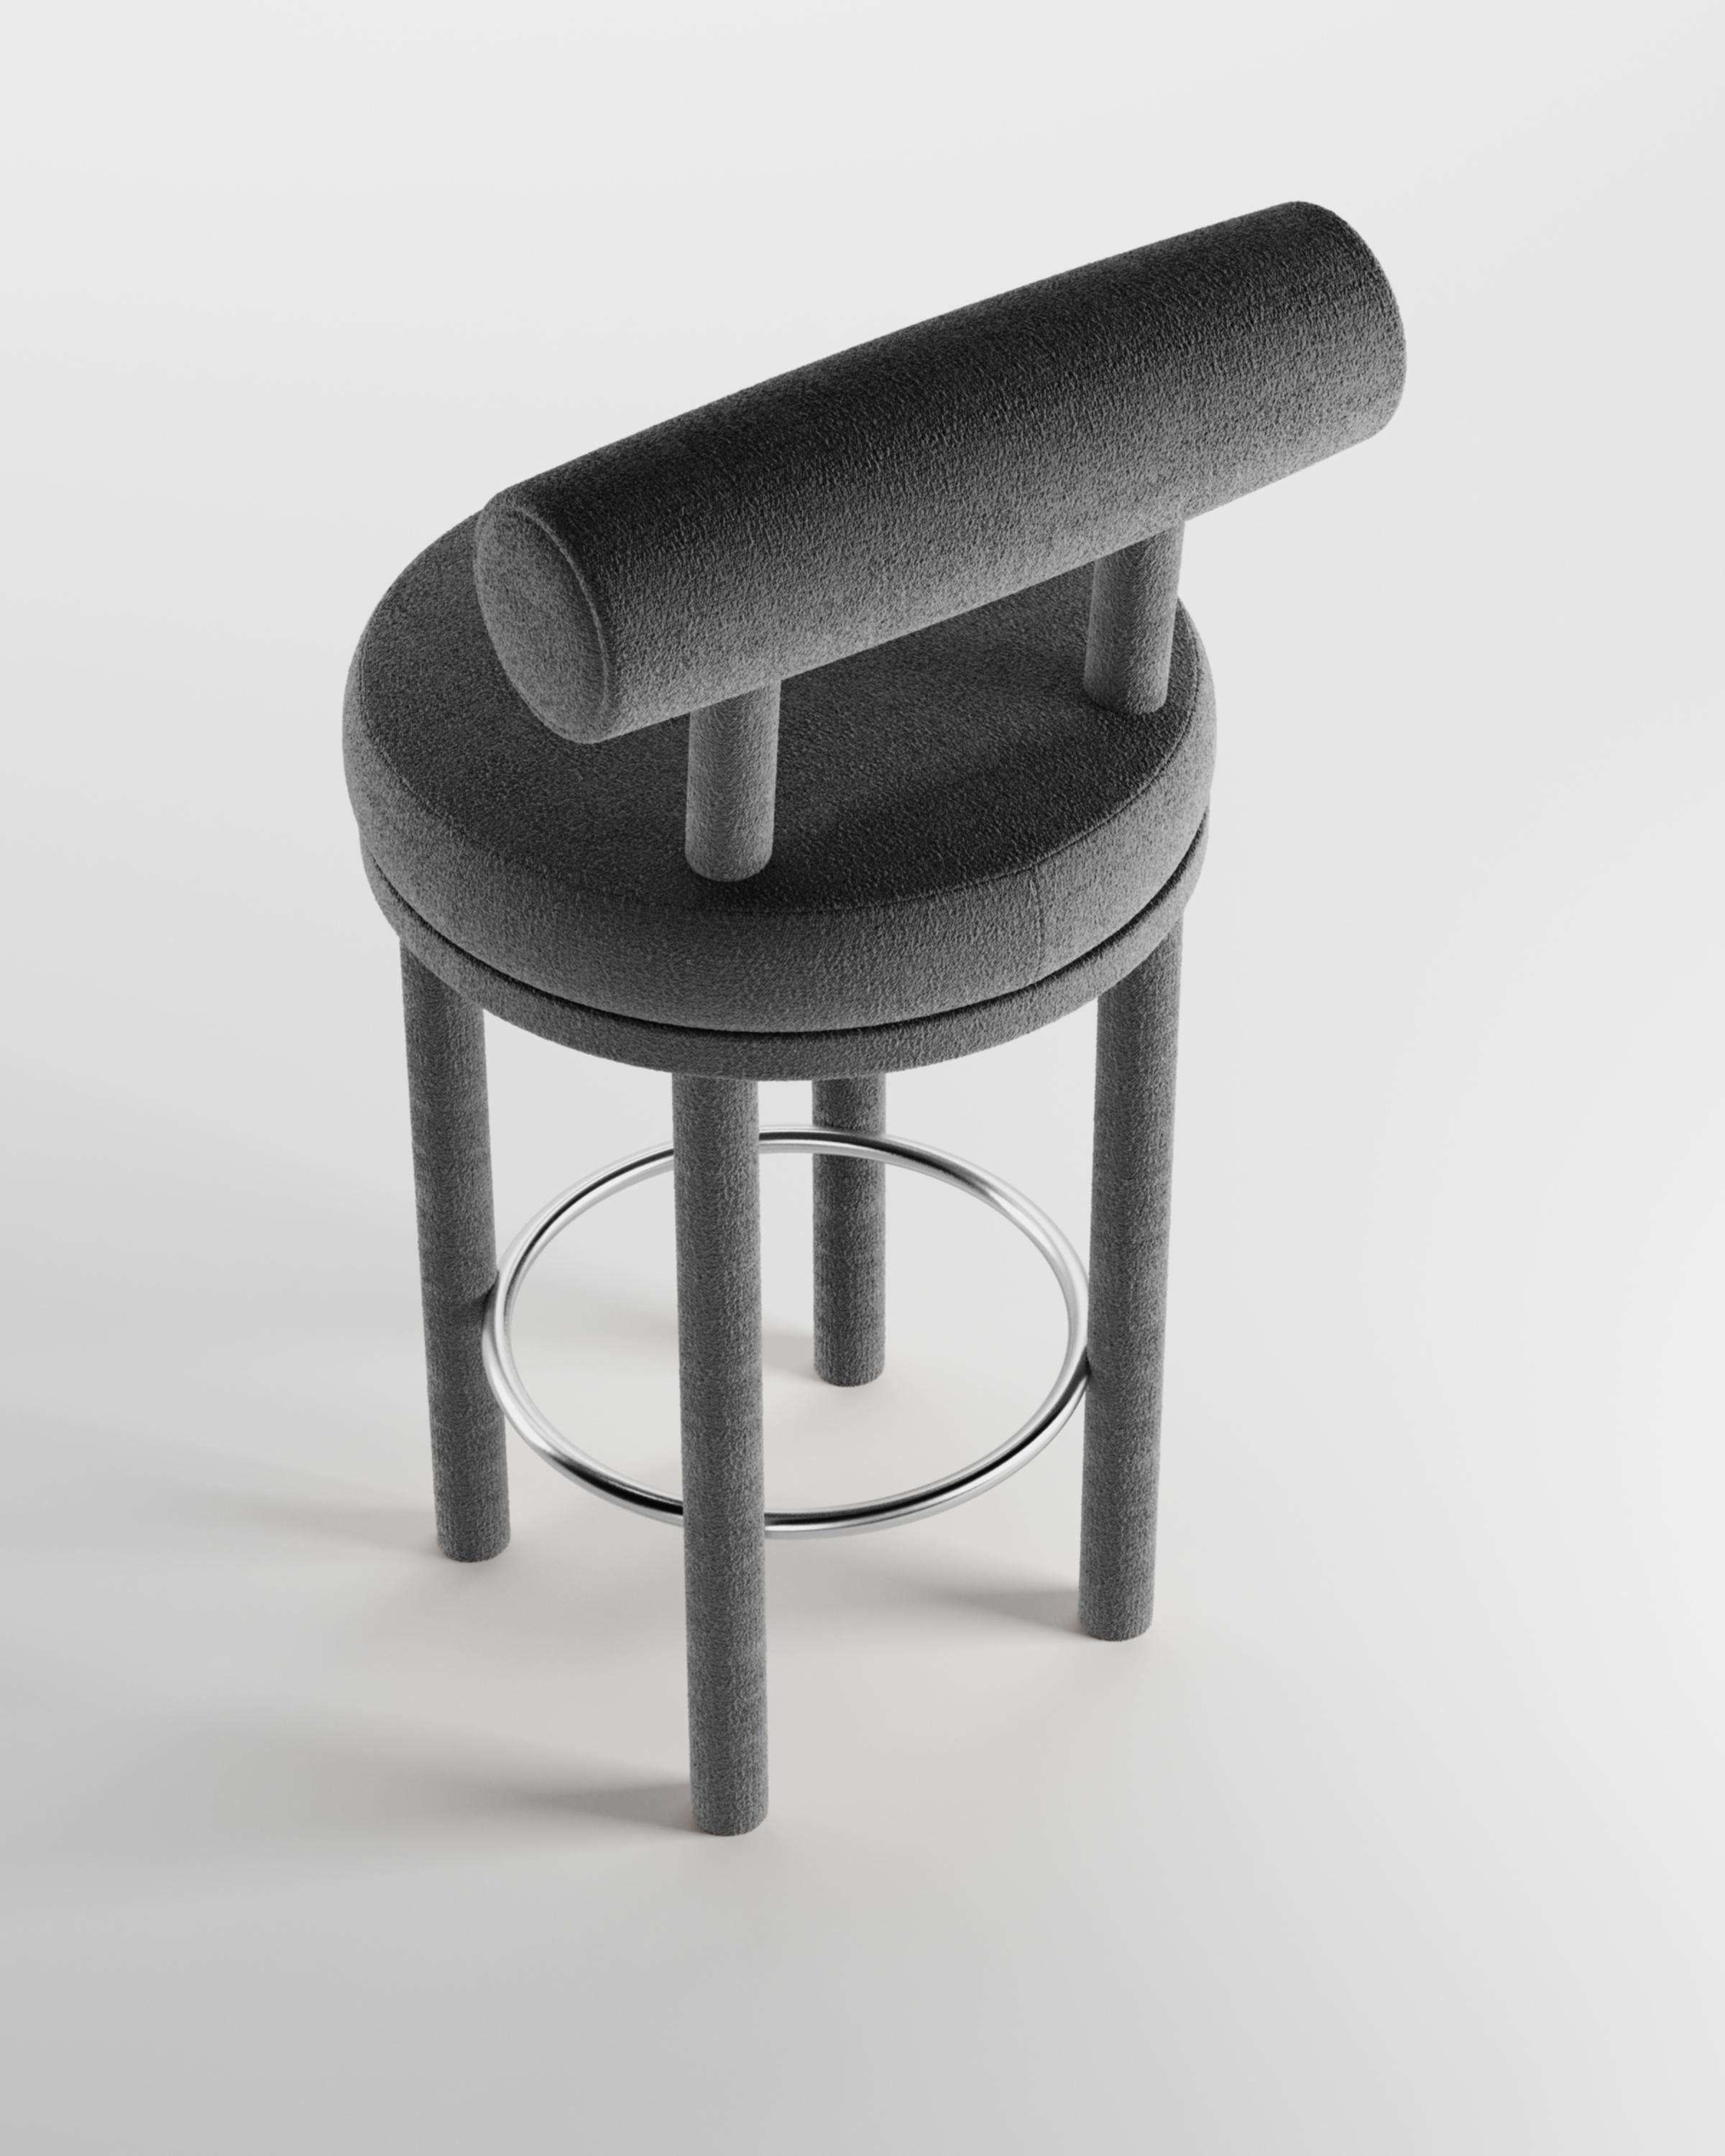 Moderner Moca Barstuhl mit Stoffbezug von Studio Rig für Collector Studio

Ein Stuhl, der sowohl moderne als auch klassische Designansätze miteinander verbindet.
Der strapazierfähige und solide Stuhl ist so konzipiert, dass er sich an den Körper